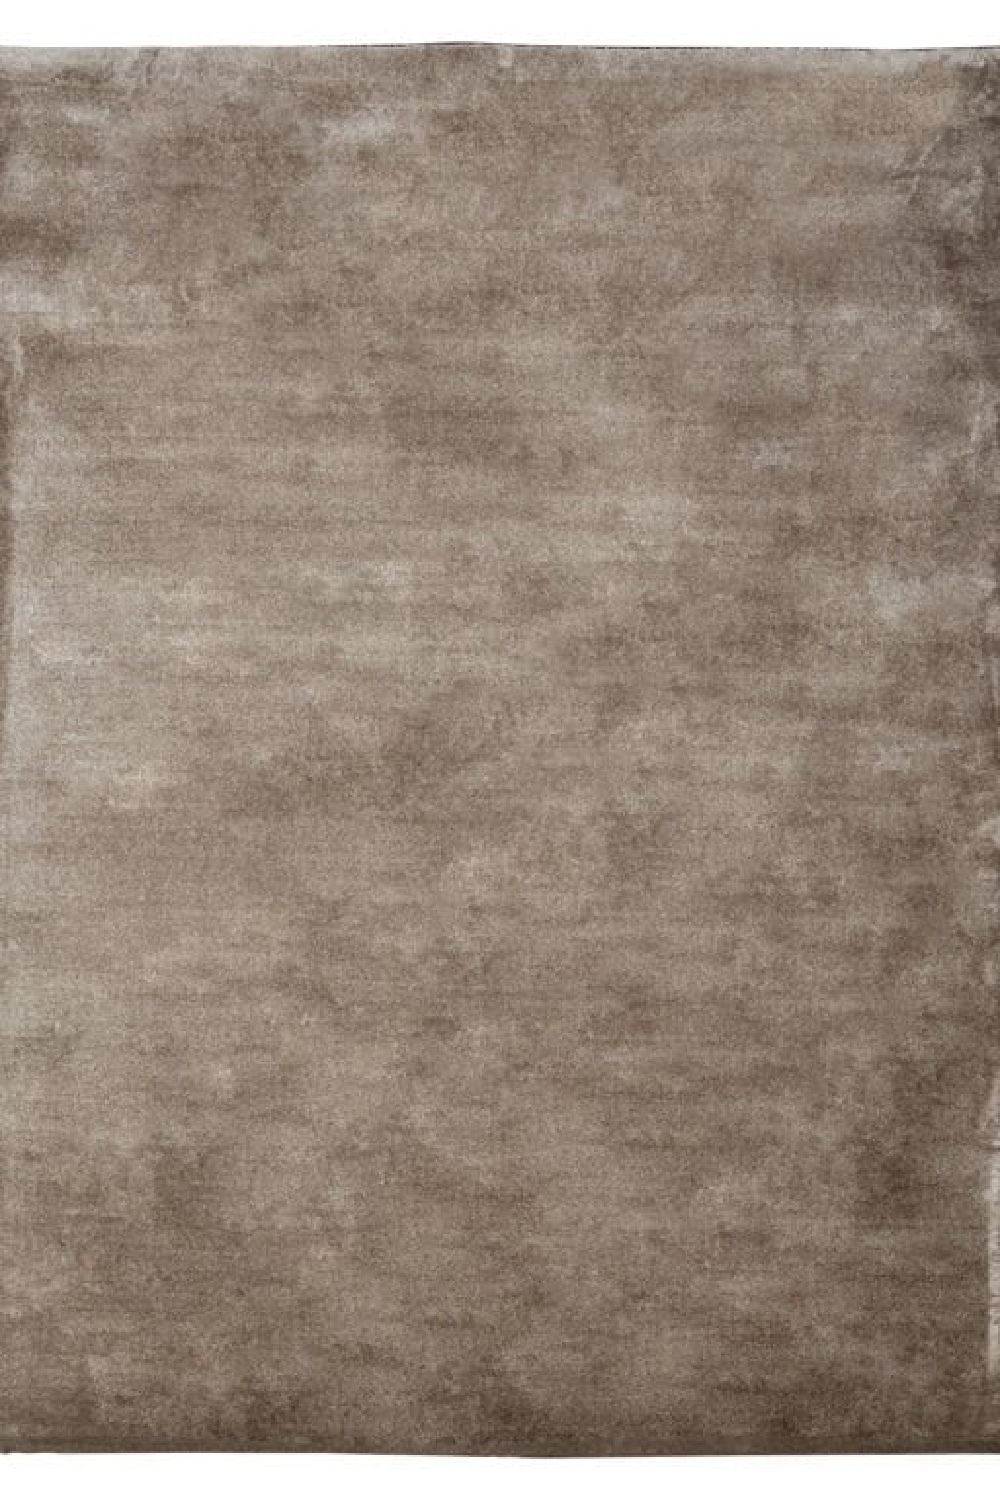 Neutral Toned Carpet | OROA Scollo | Oroa.com